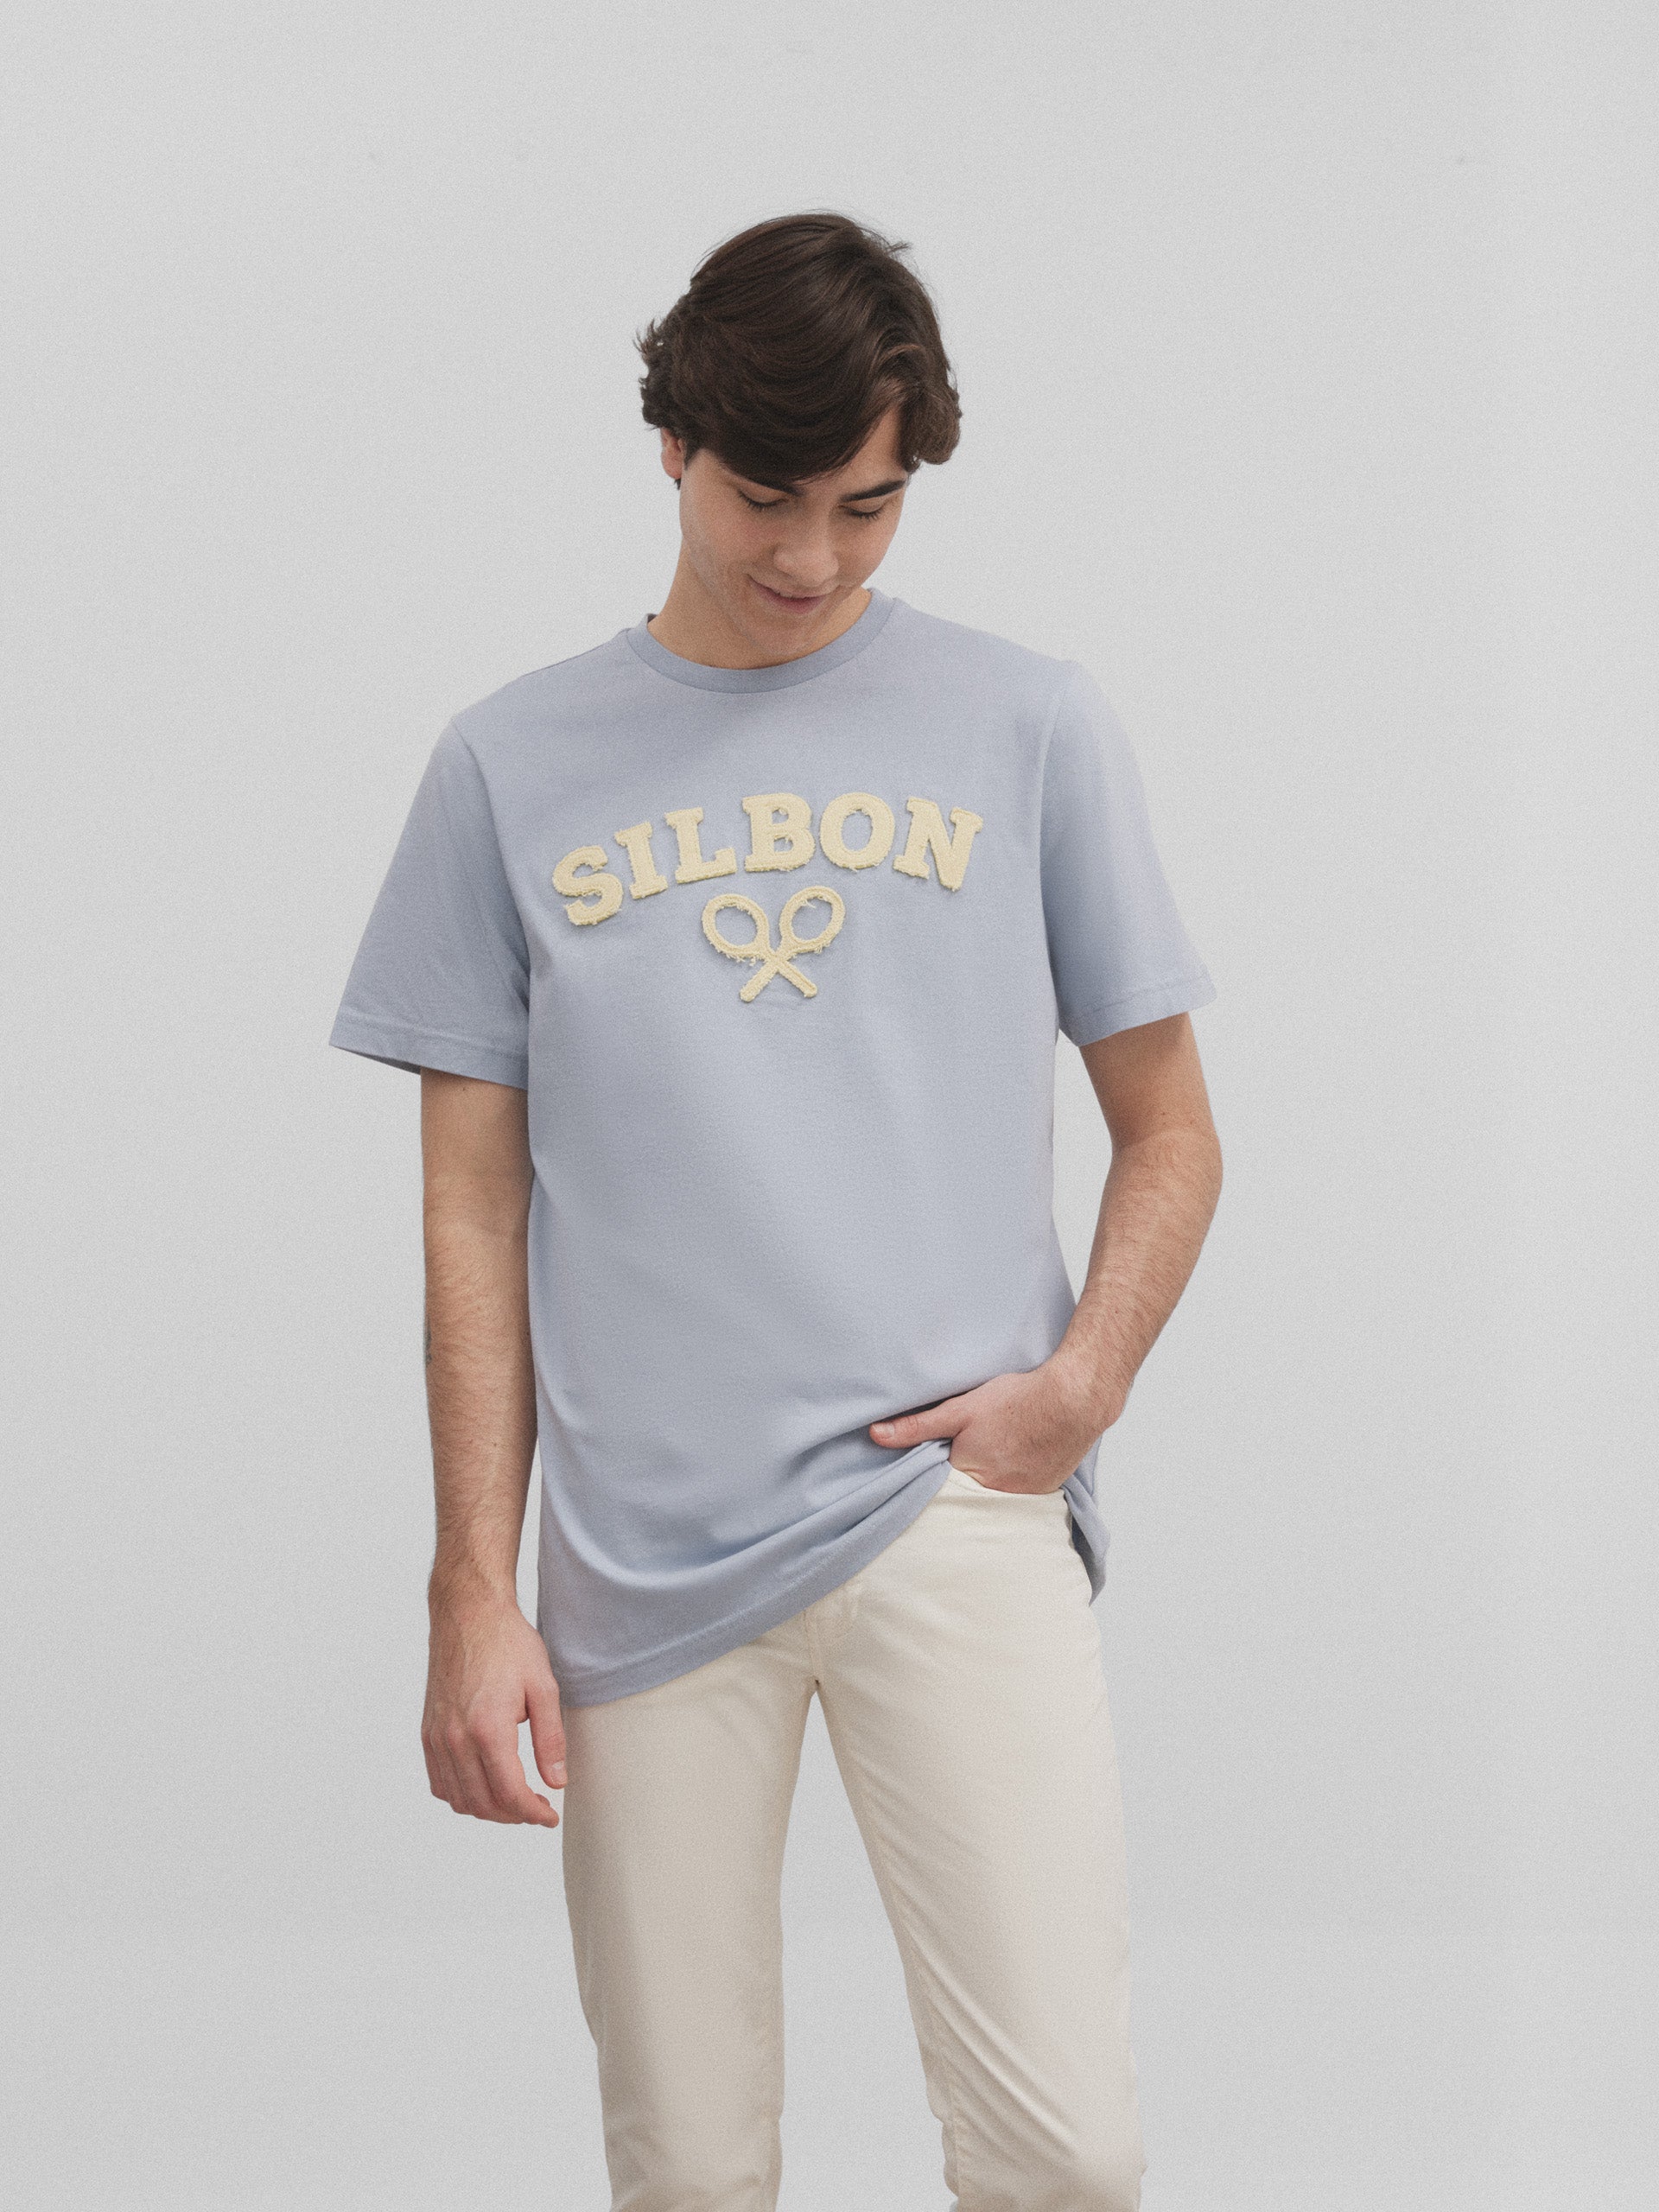 Silbon medium blue racket t-shirt